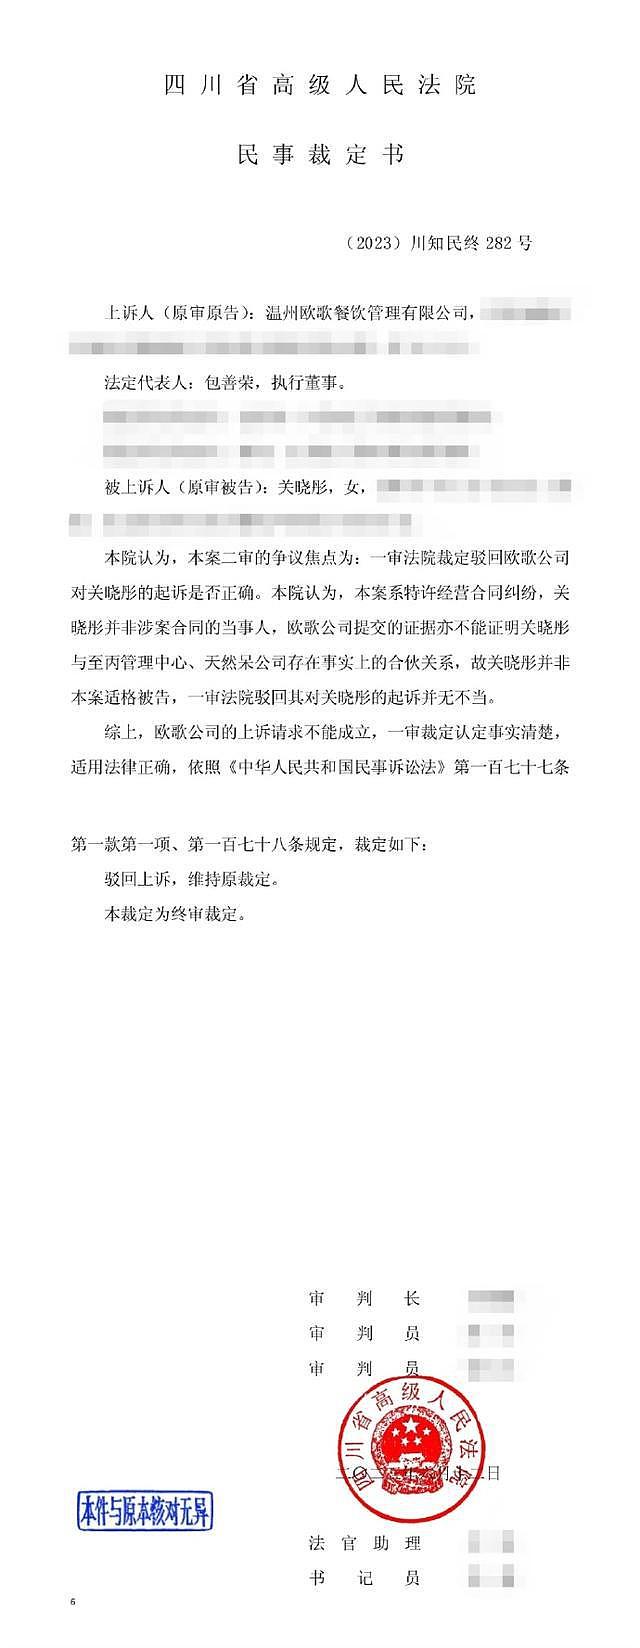 天然呆奶茶公司被强执 关晓彤方回应称与其无关联 - 1